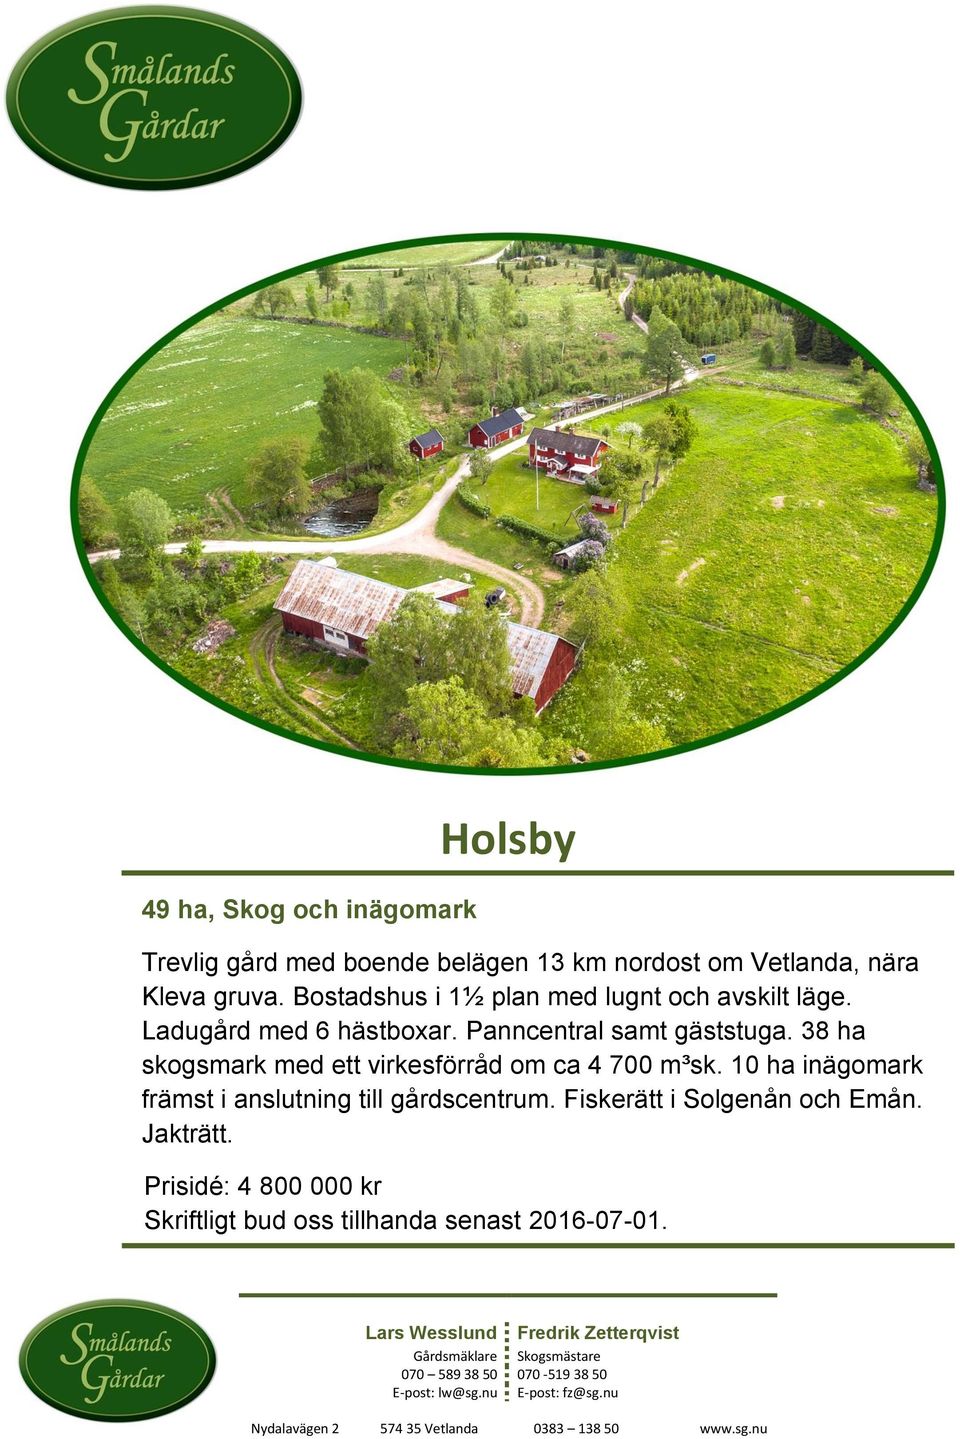 38 ha skogsmark med ett virkesförråd om ca 4 700 m³sk. 10 ha inägomark främst i anslutning till gårdscentrum. Fiskerätt i Solgenån och Emån. Jakträtt.